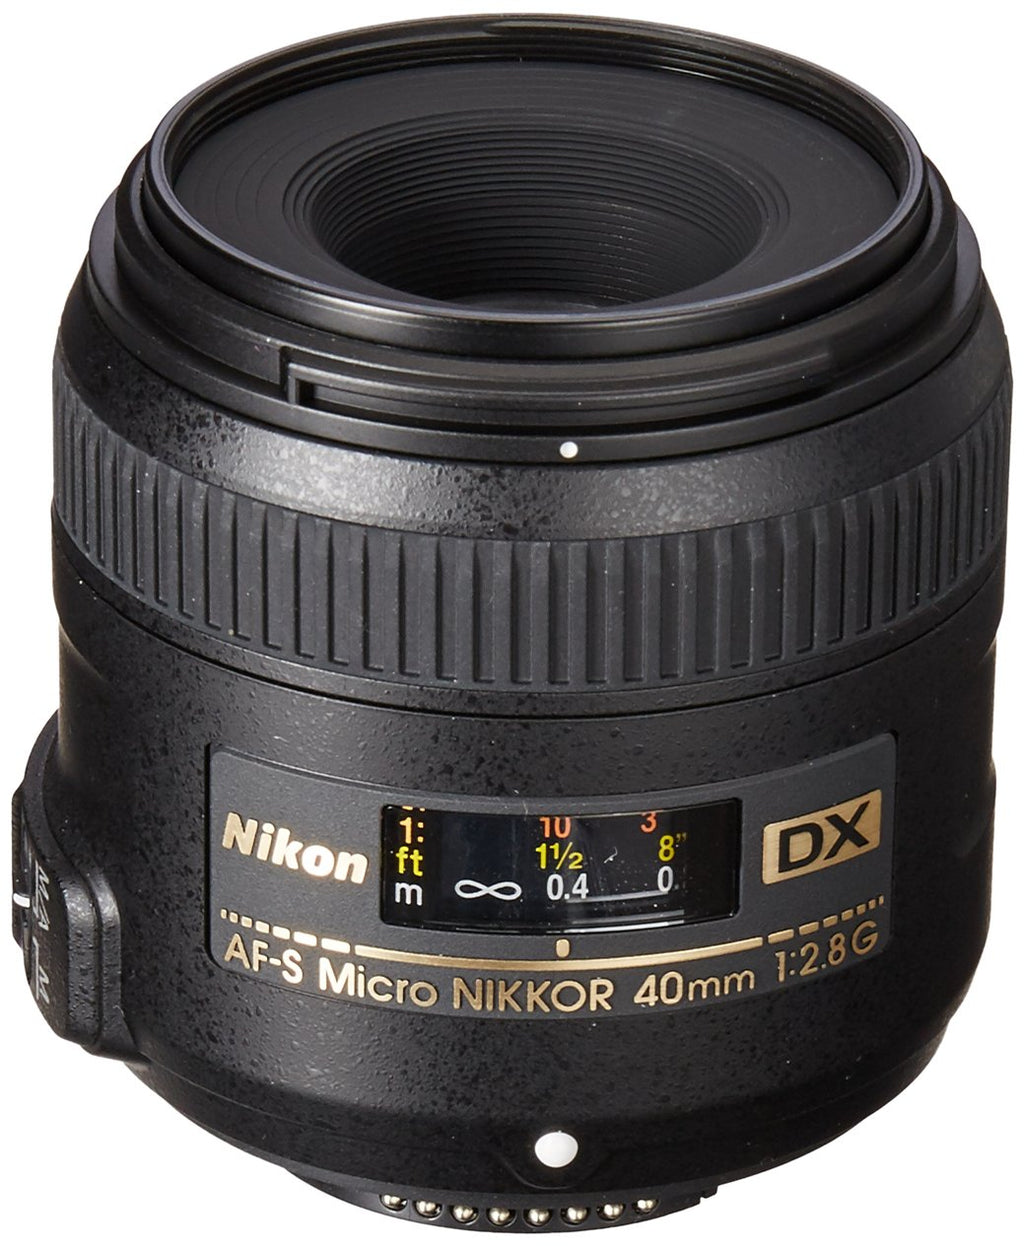 Nikon DSLR कैमरा के लिए Nikon AF-S DX माइक्रो 40mm F/2.8G प्राइम लेंस